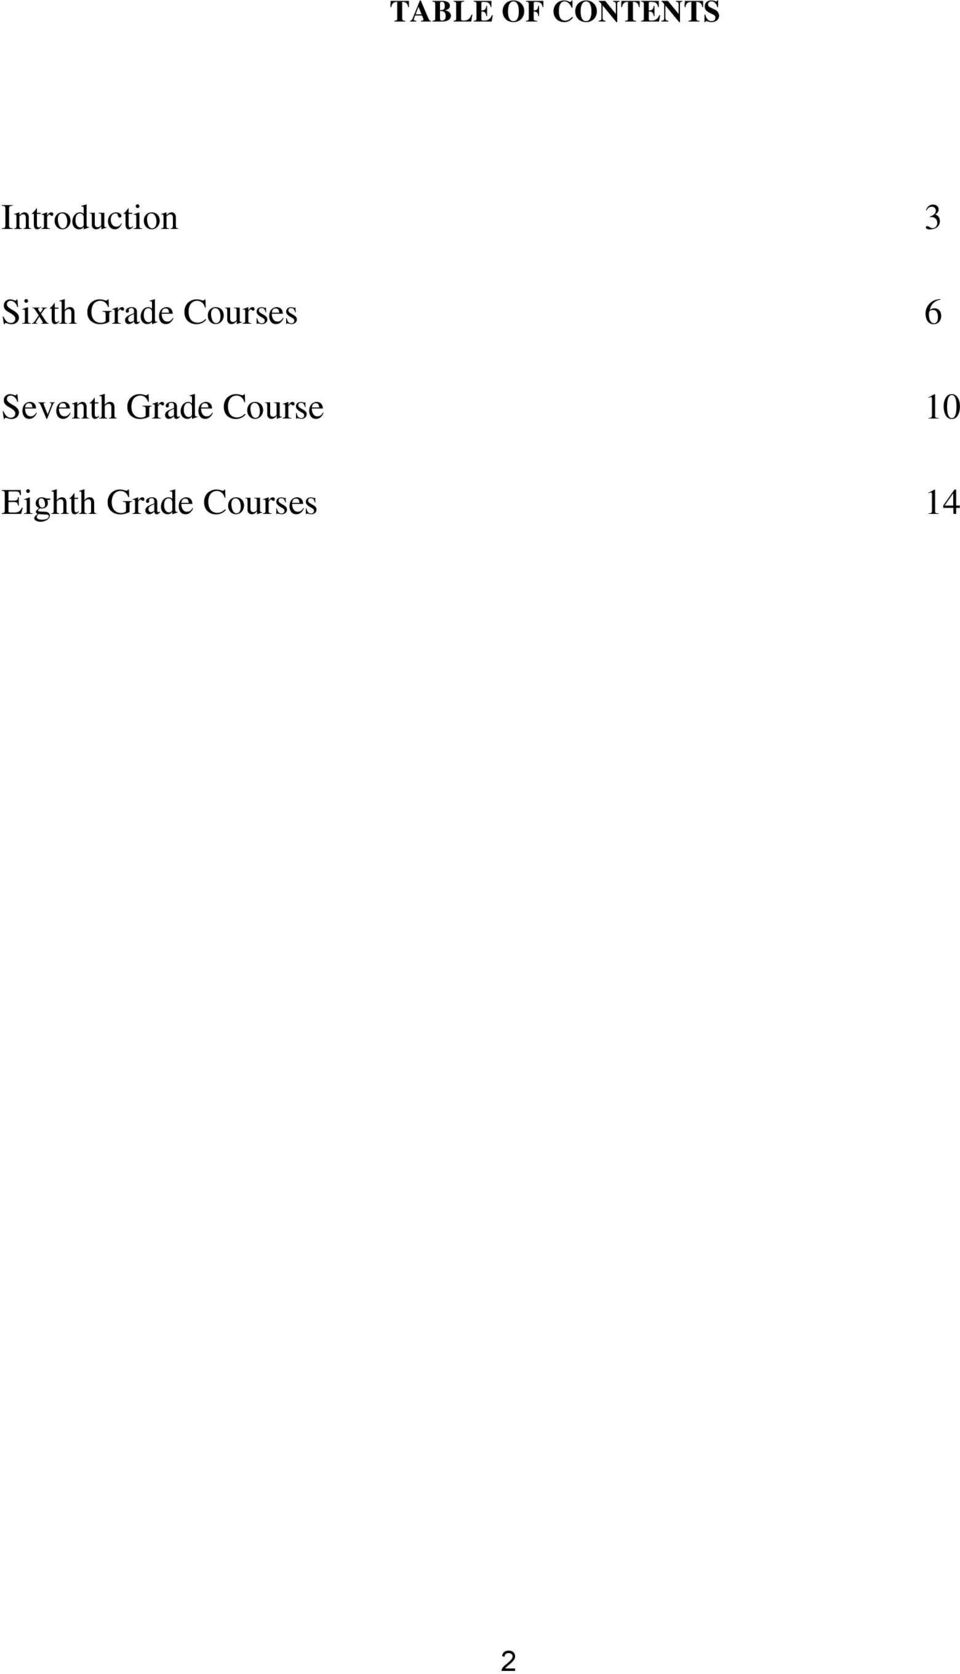 Grade Courses 6 Seventh